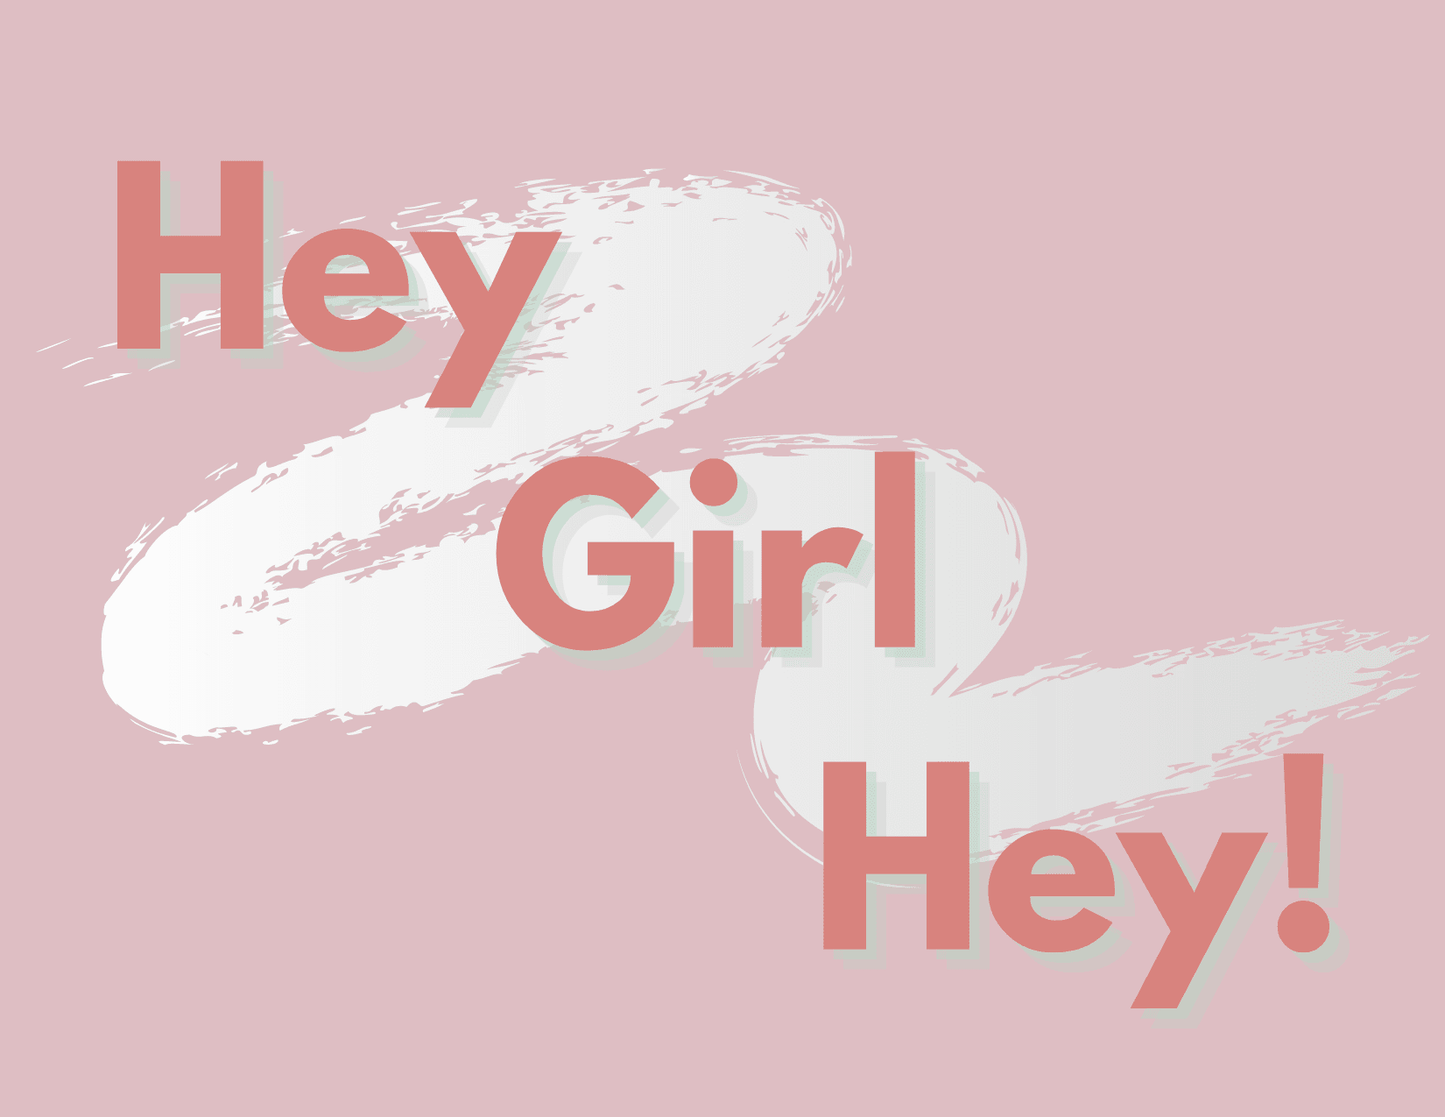 Card: Hey Girl Hey - Salty Box Co.